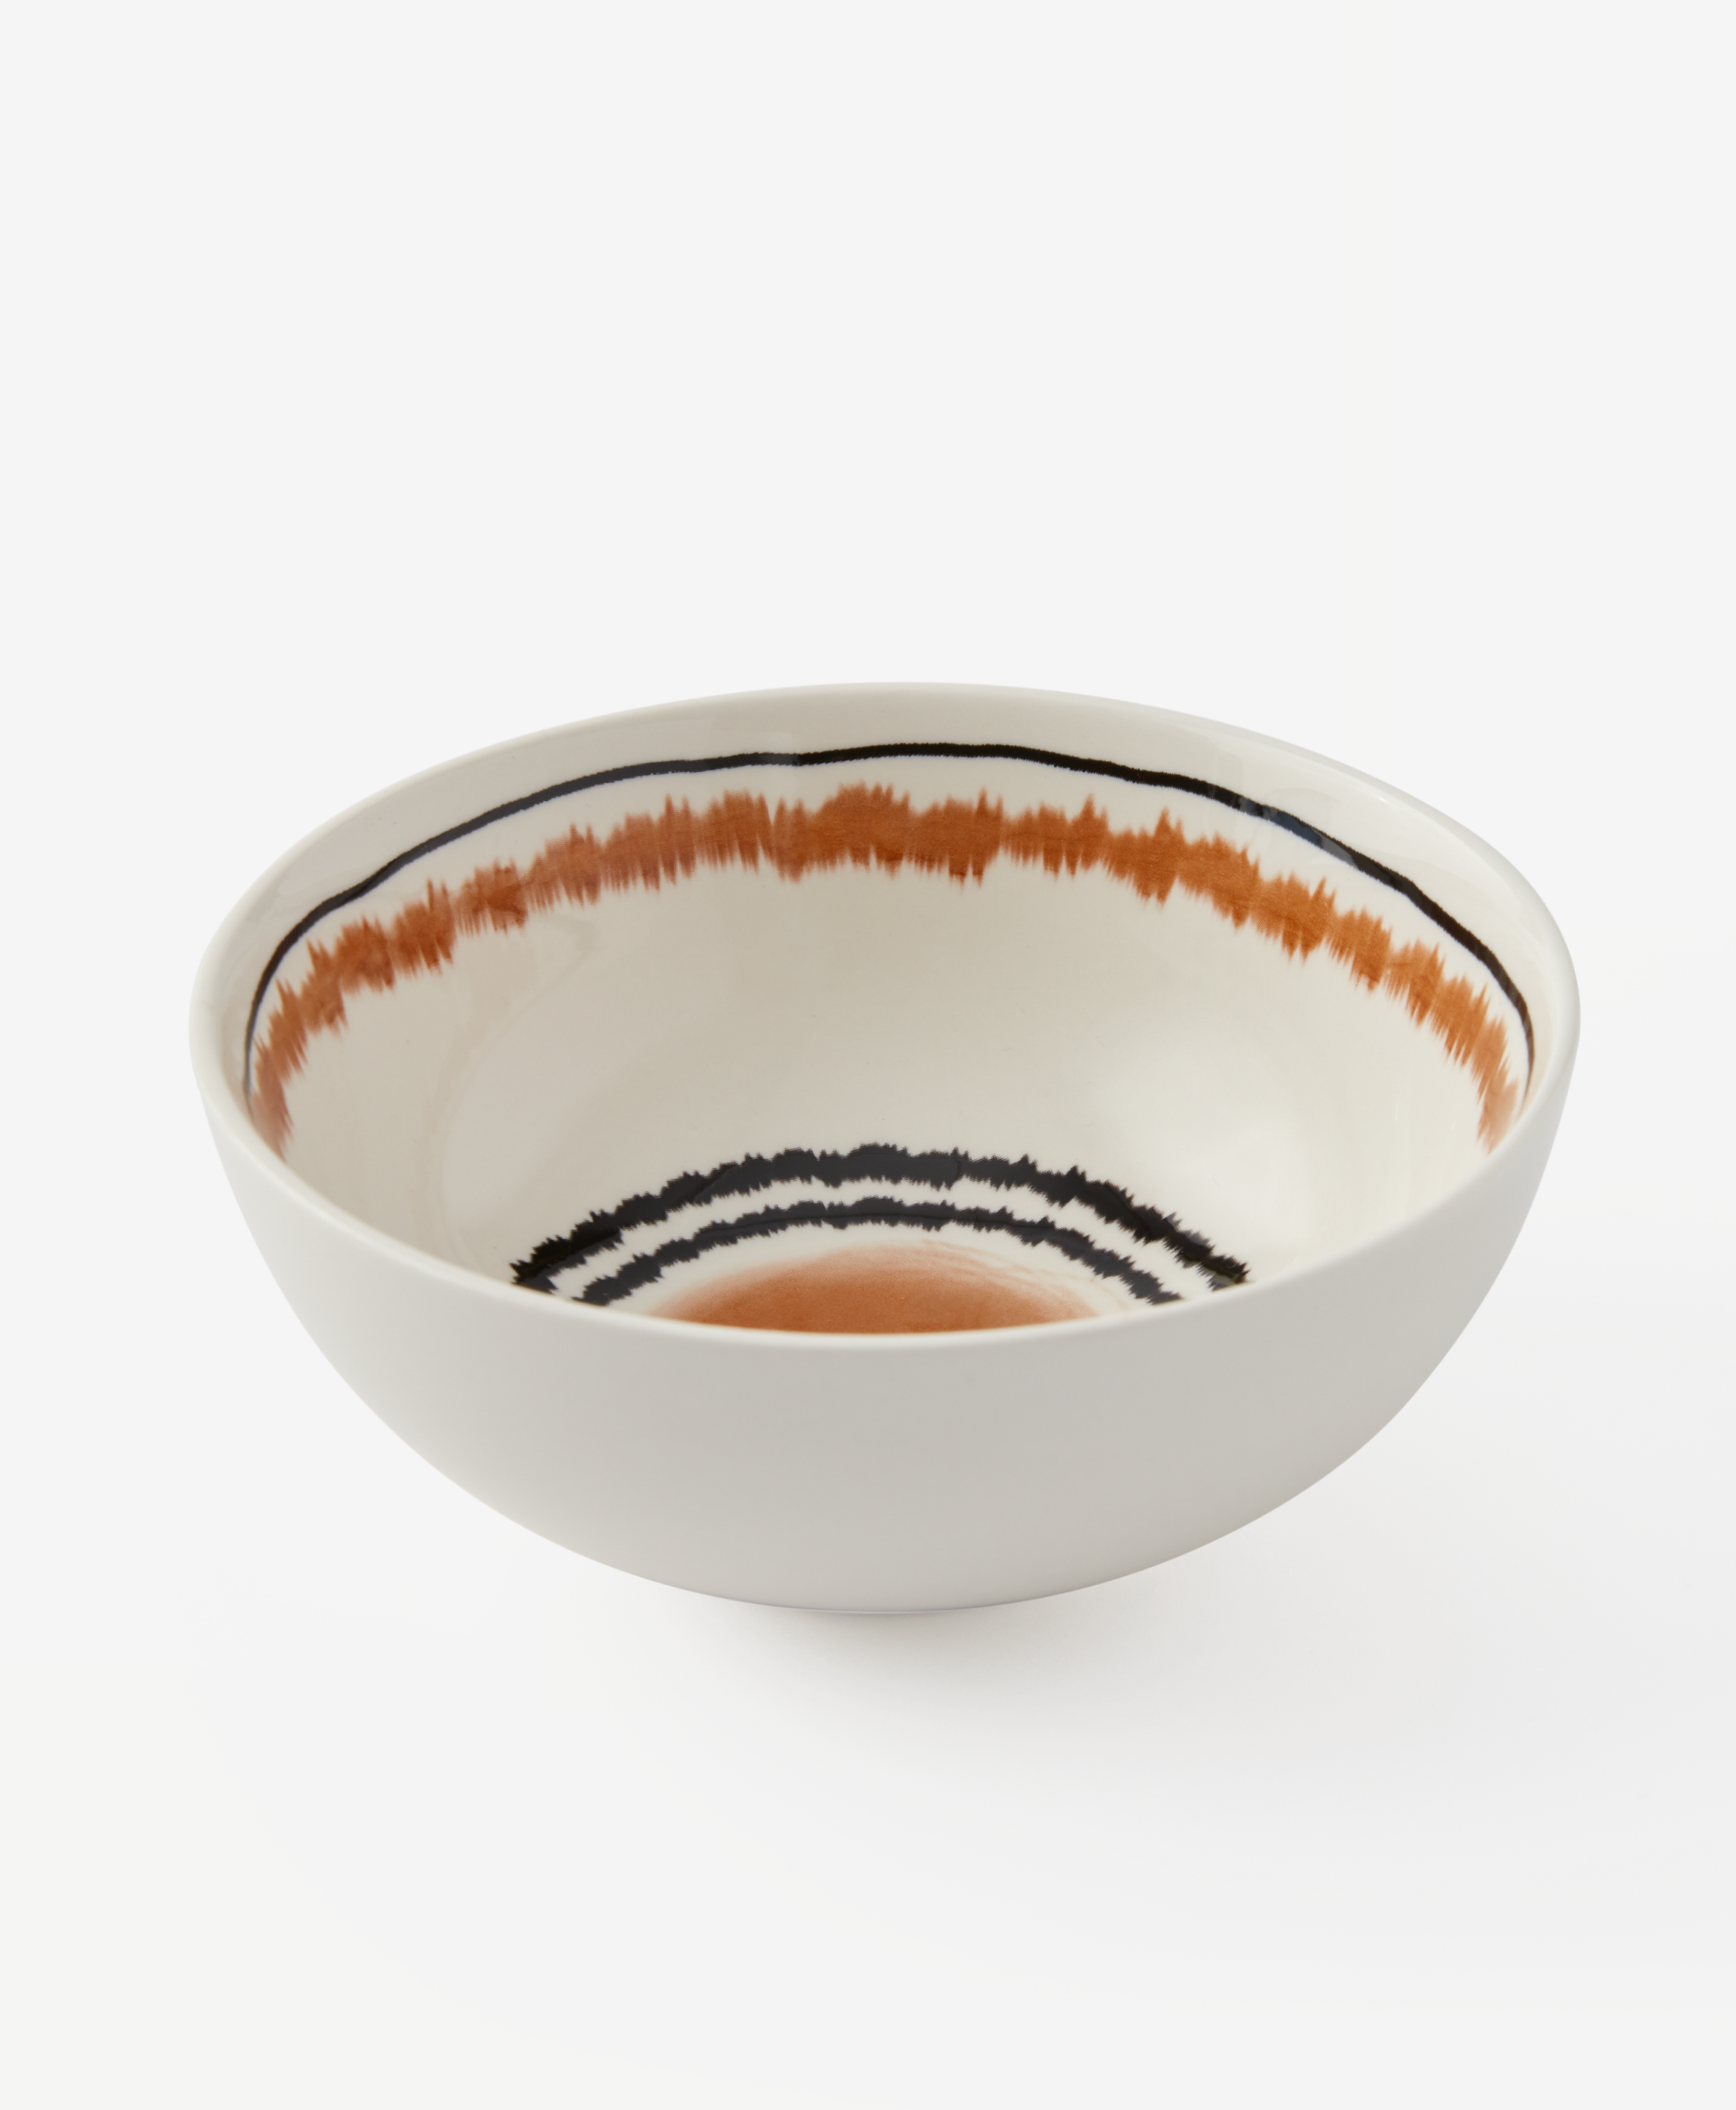 Keramikschüssel mit Muster, weiß, braun, Ø 16,5 cm